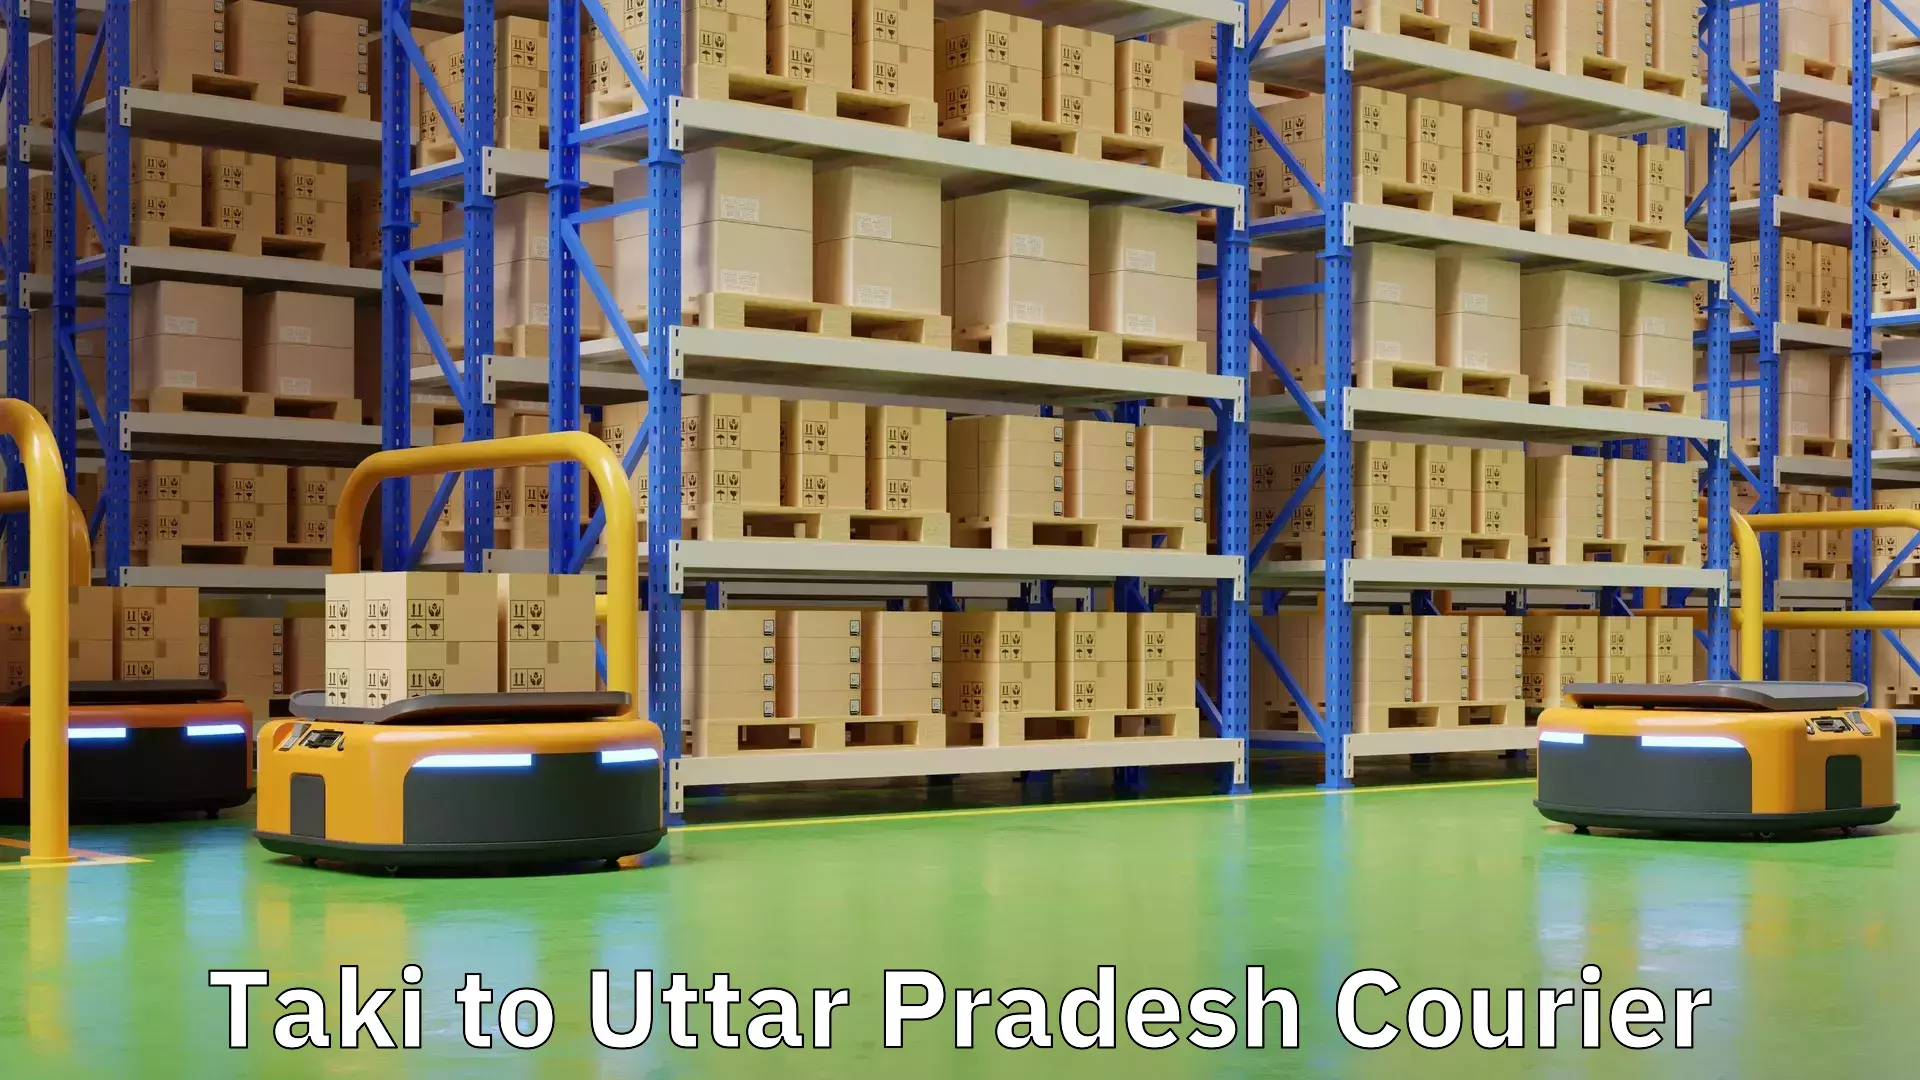 Versatile courier offerings Taki to Uttar Pradesh